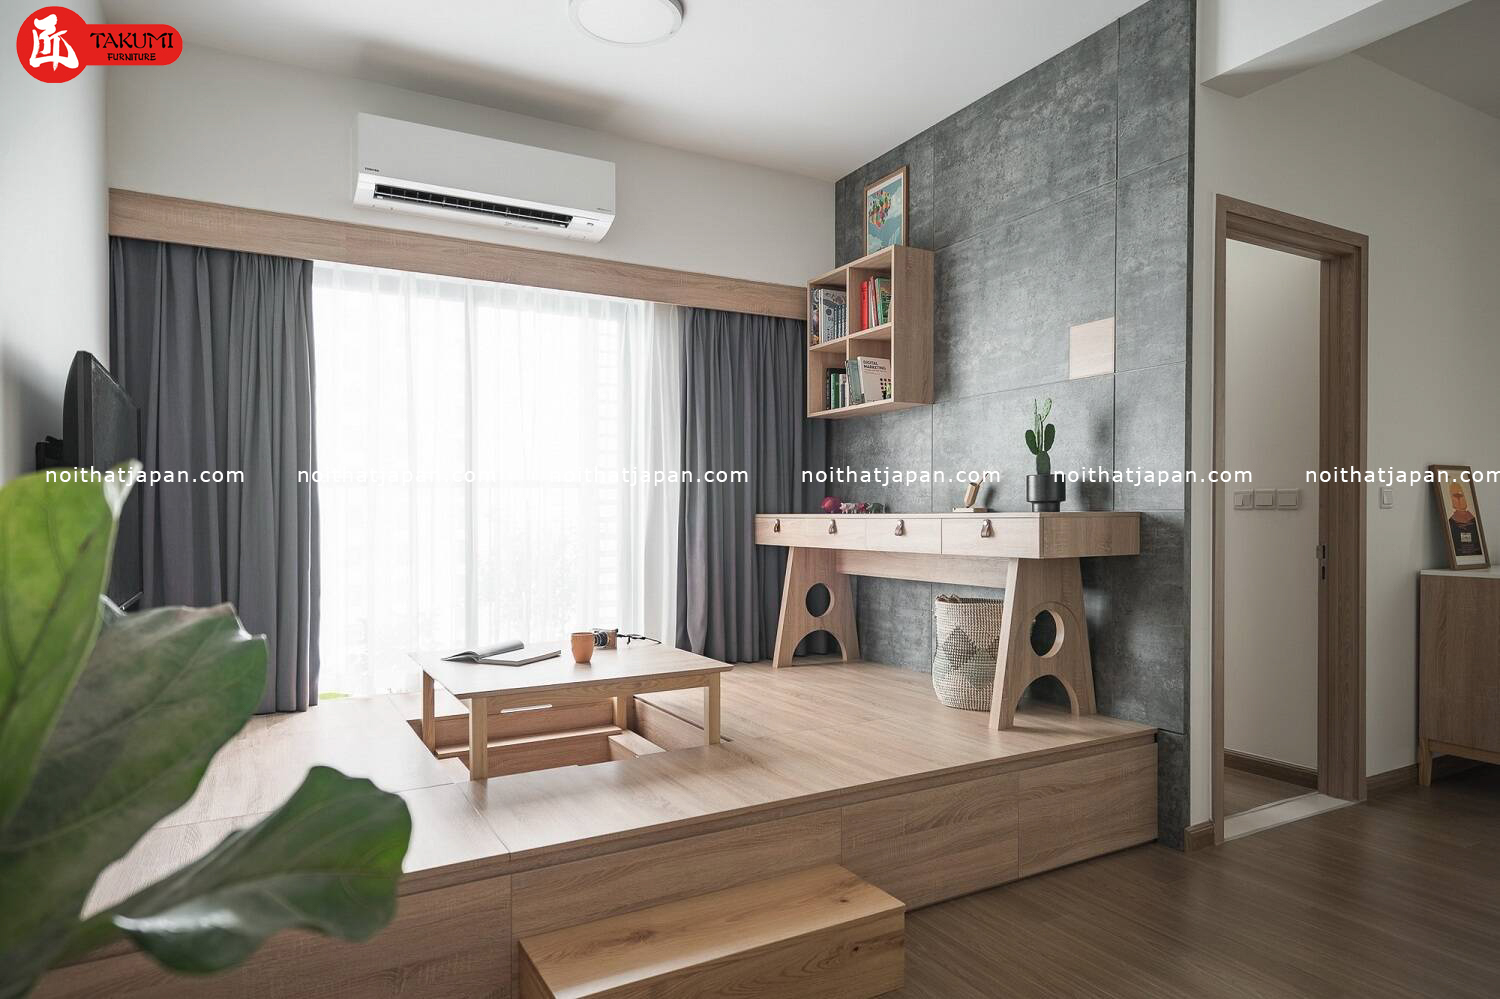 Thiết kế nhà phong cách tối giản Nhật Bản: Những năm gần đây, phong cách tối giản Nhật Bản đang trở nên phổ biến nhất, đặc biệt là trong thiết kế kiến ​​trúc mới. Thiết kế nhà kiểu Nhật Bản tối giản là một lựa chọn tuyệt vời cho những ai yêu thích thiết kế thanh lịch, tiện nghi và đẳng cấp. Với các linh kiện và sản phẩm được chọn lọc kỹ lưỡng, bạn sẽ tận hưởng một không gian sống tuyệt vời với phong cách tinh tế và đơn giản.